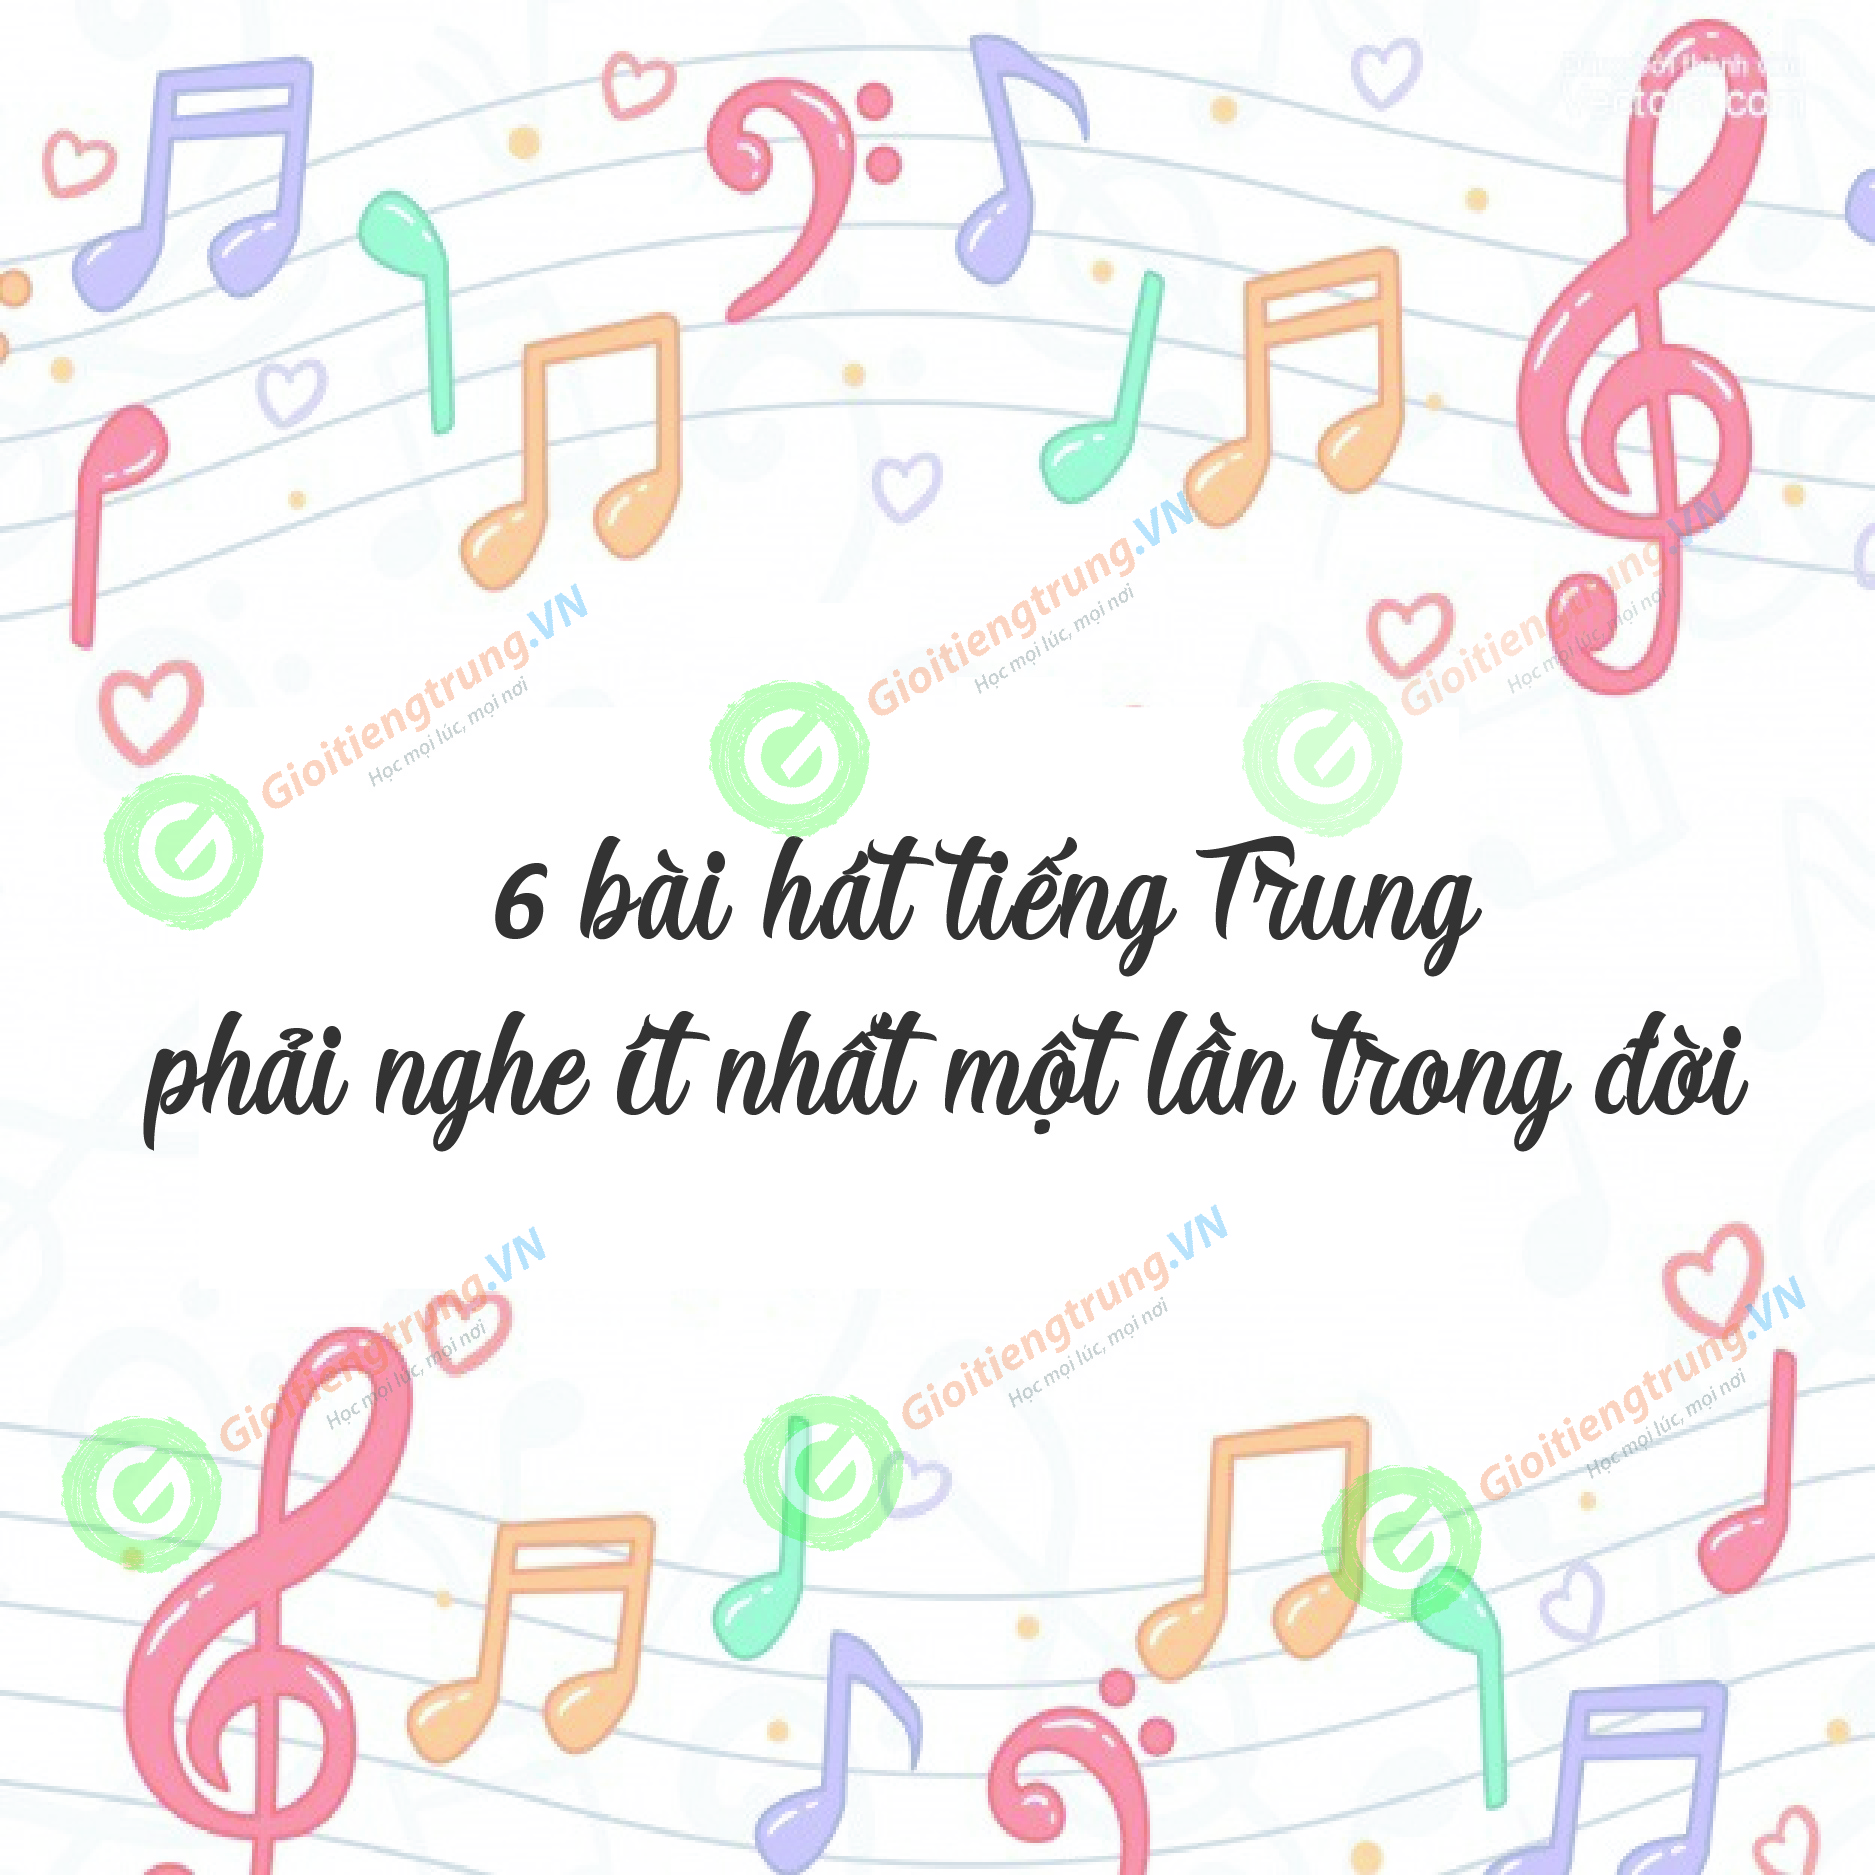 6 bài hát tiếng Trung phải nghe ít nhất một lần trong đời